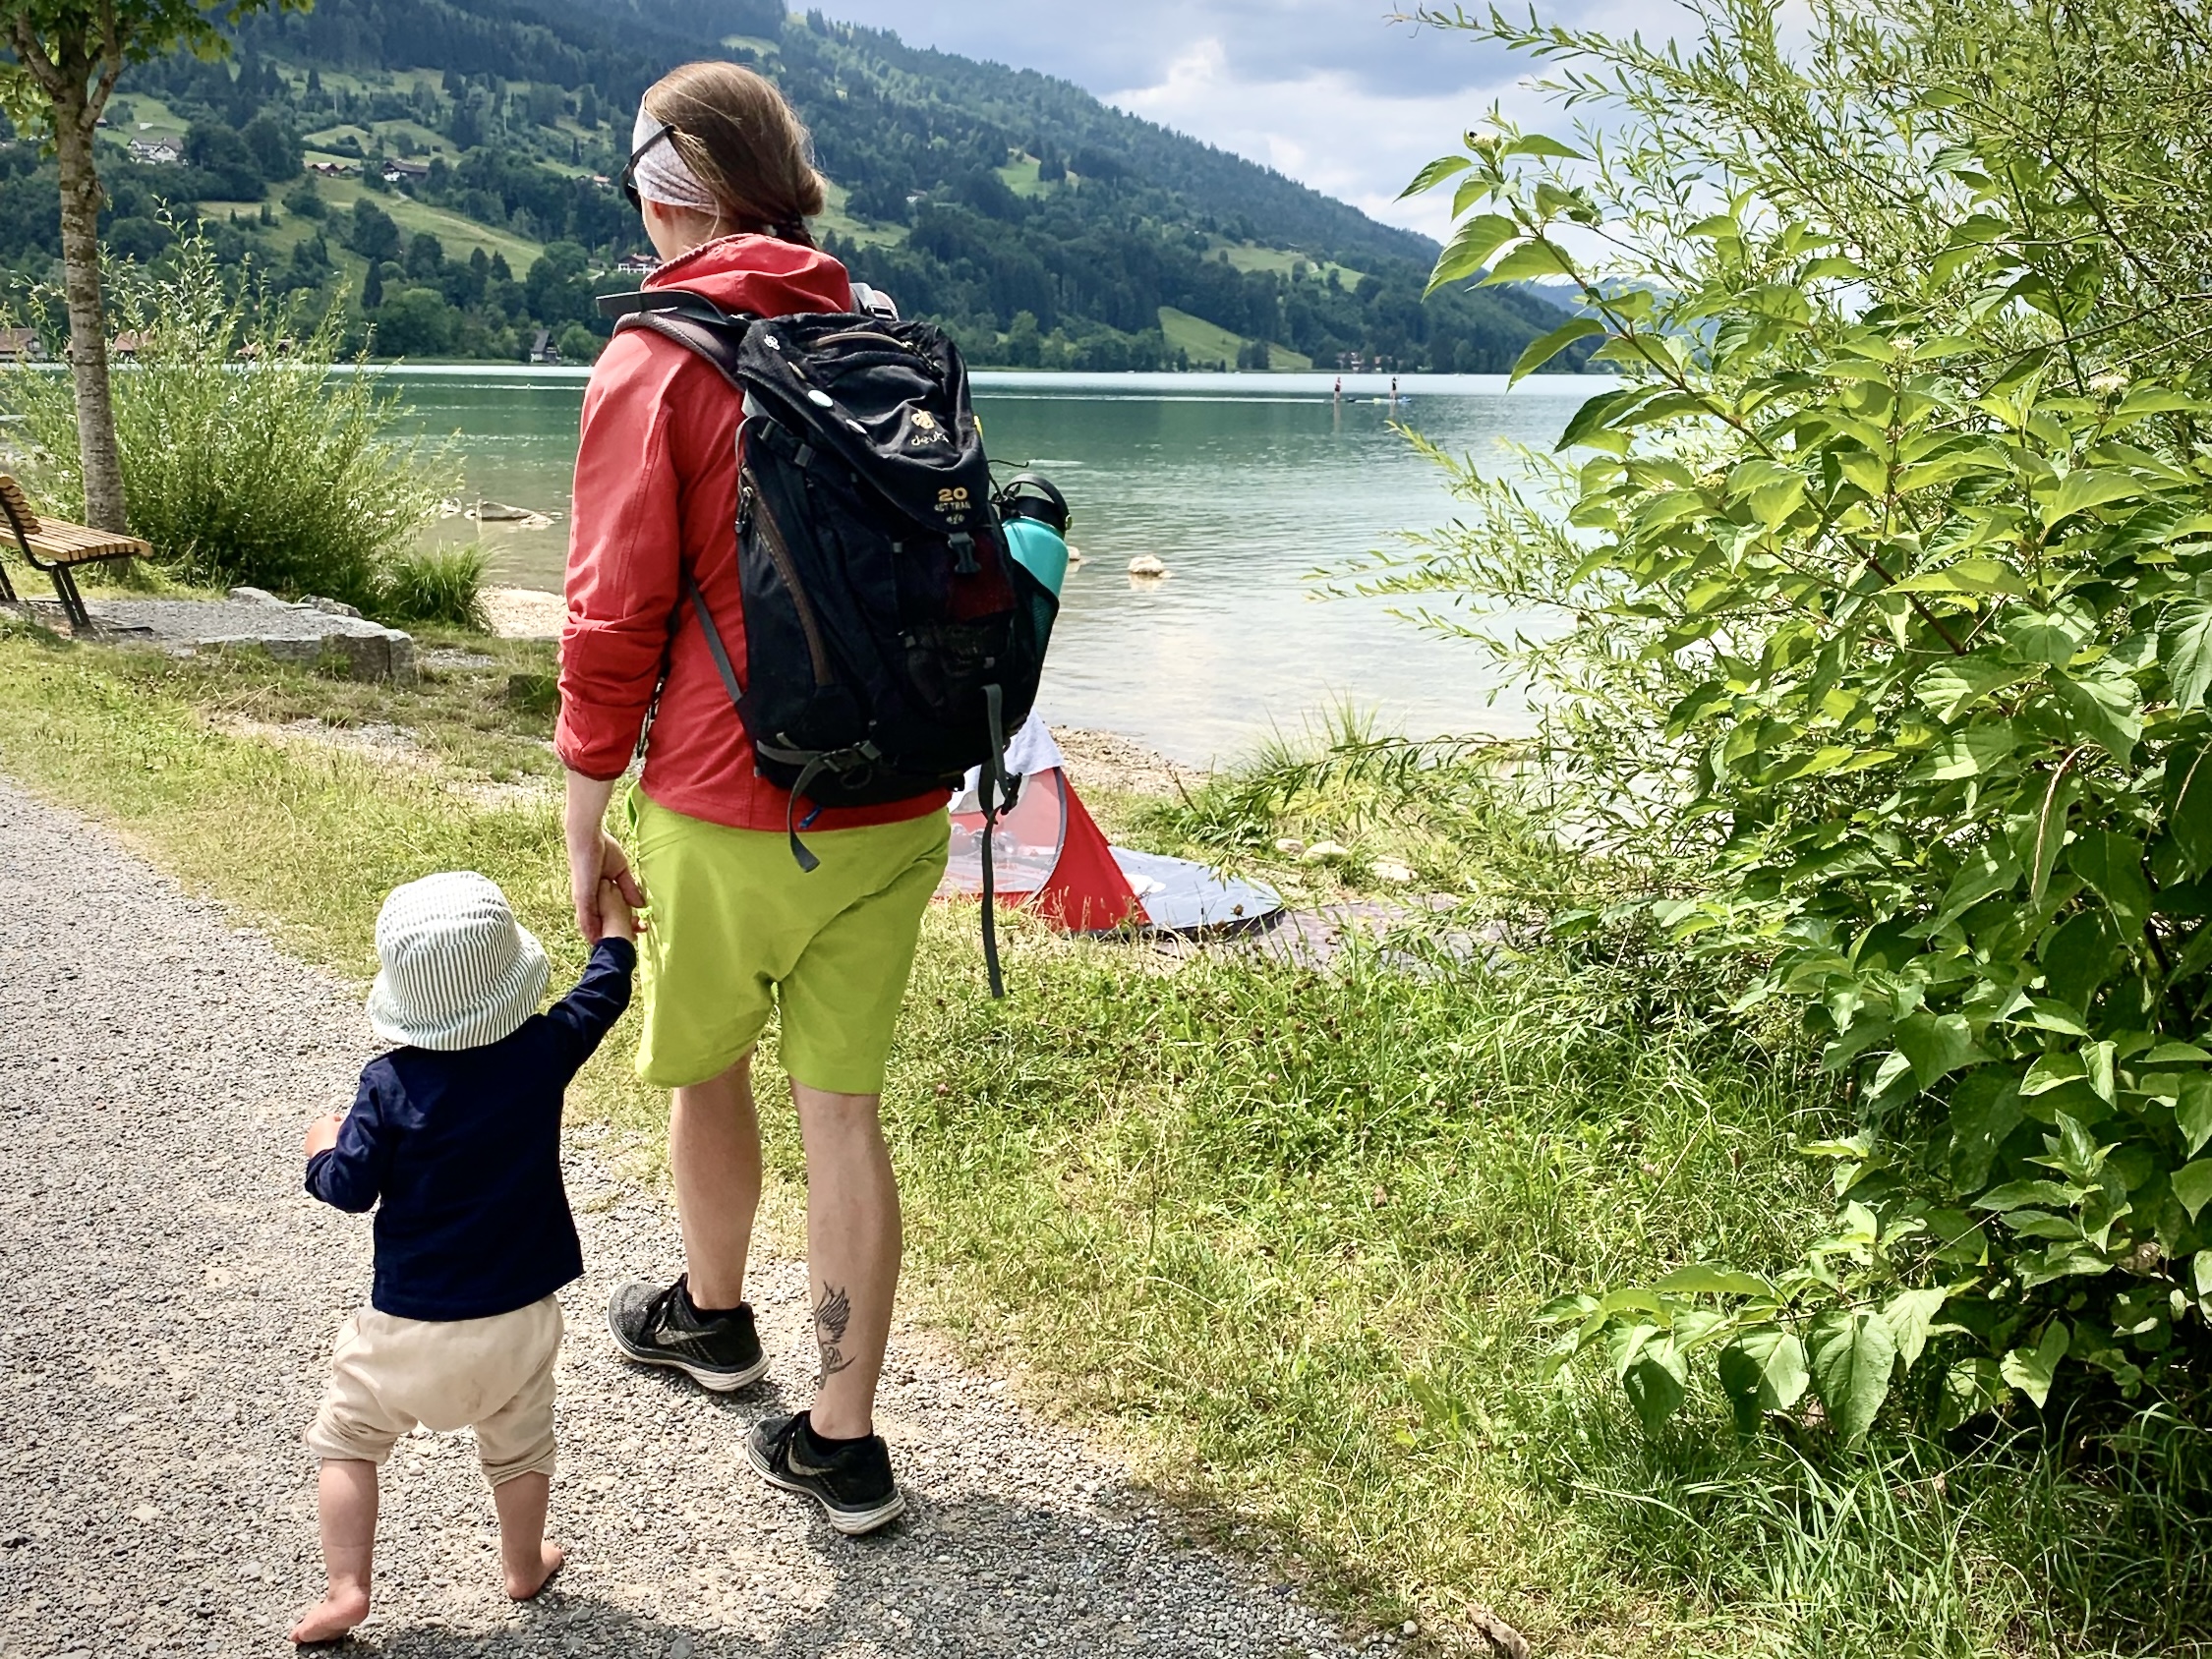 "Mama, zeig mir die Welt!" – Meine Tochter und Ich, Hand in Hand am Ufer eines Bergsees.